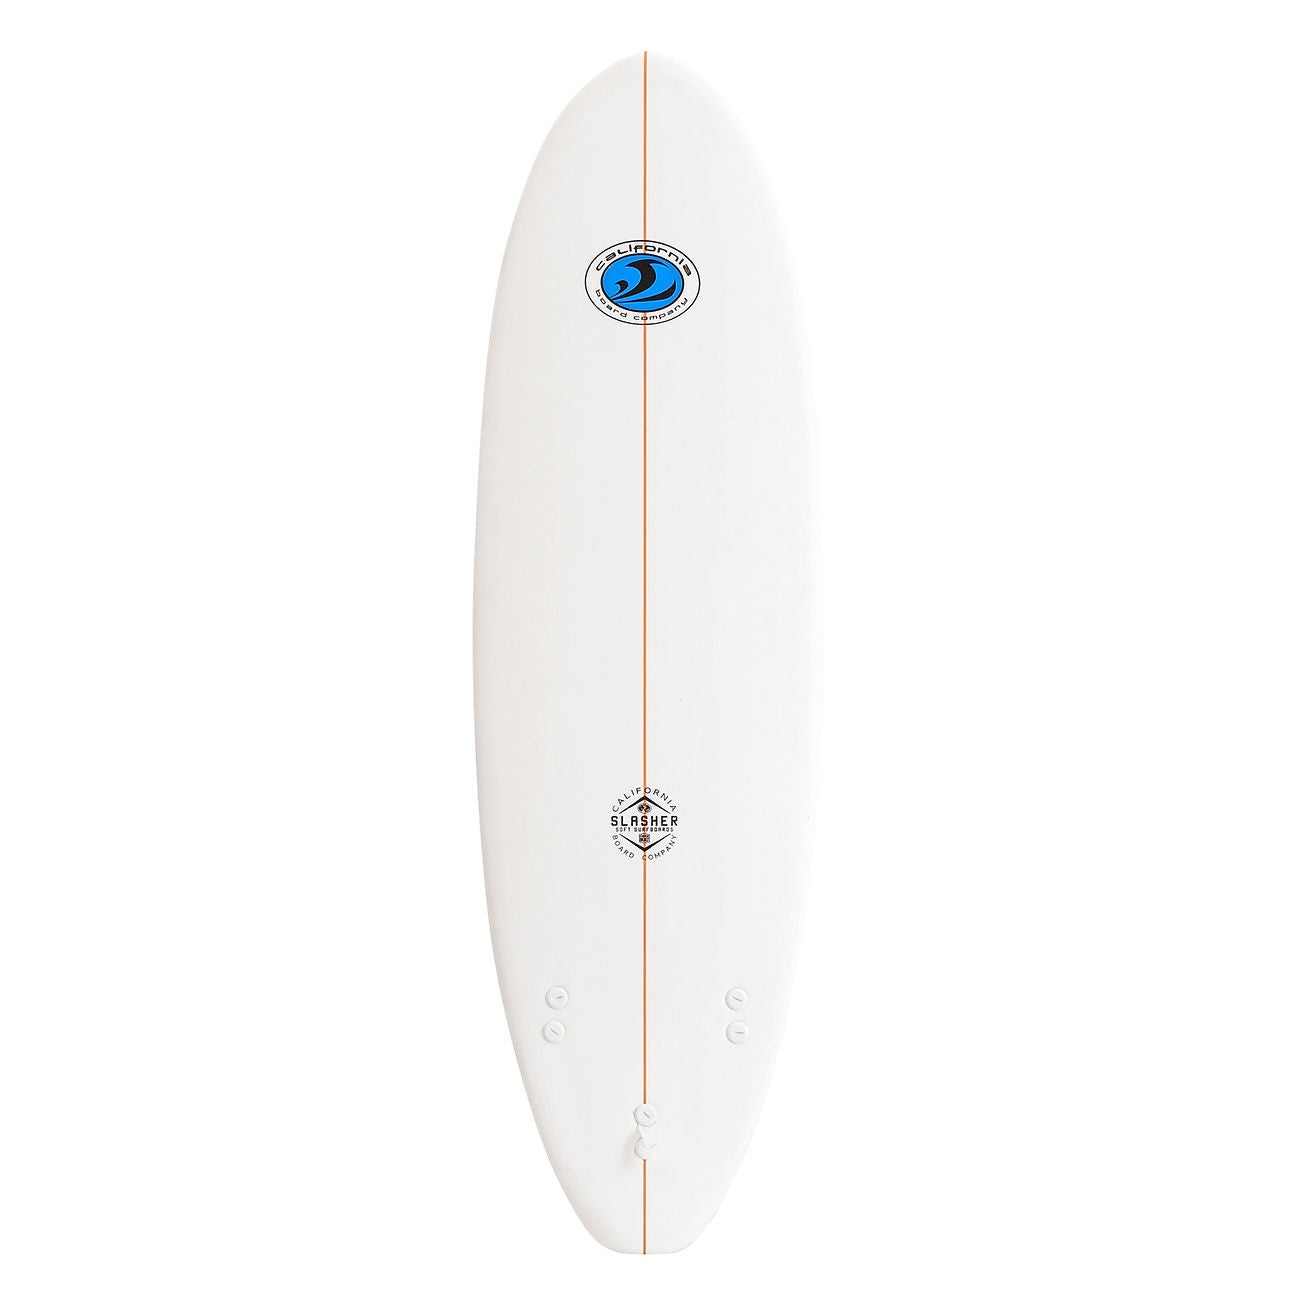 CBC - Planche de Surf en mousse - Softboard Slasher 6'0 - White